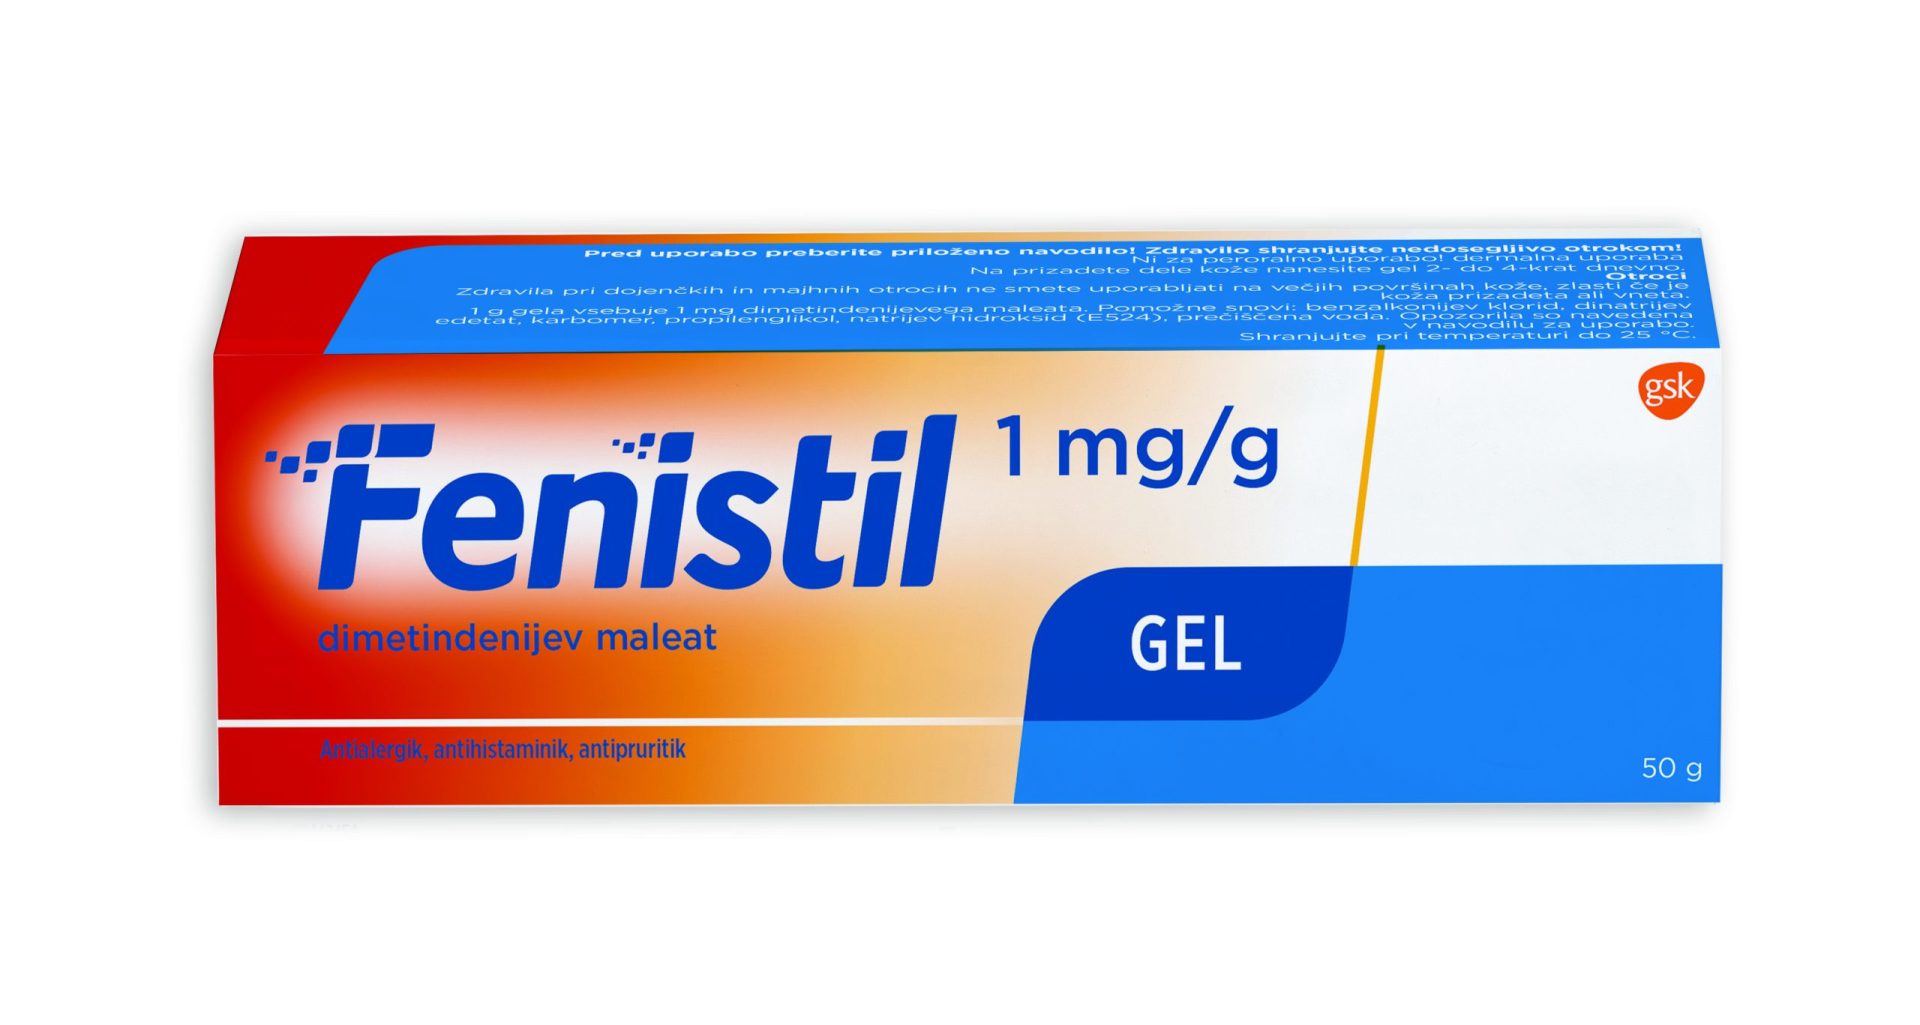 Fenistil gel 1 mg/g, 50 g